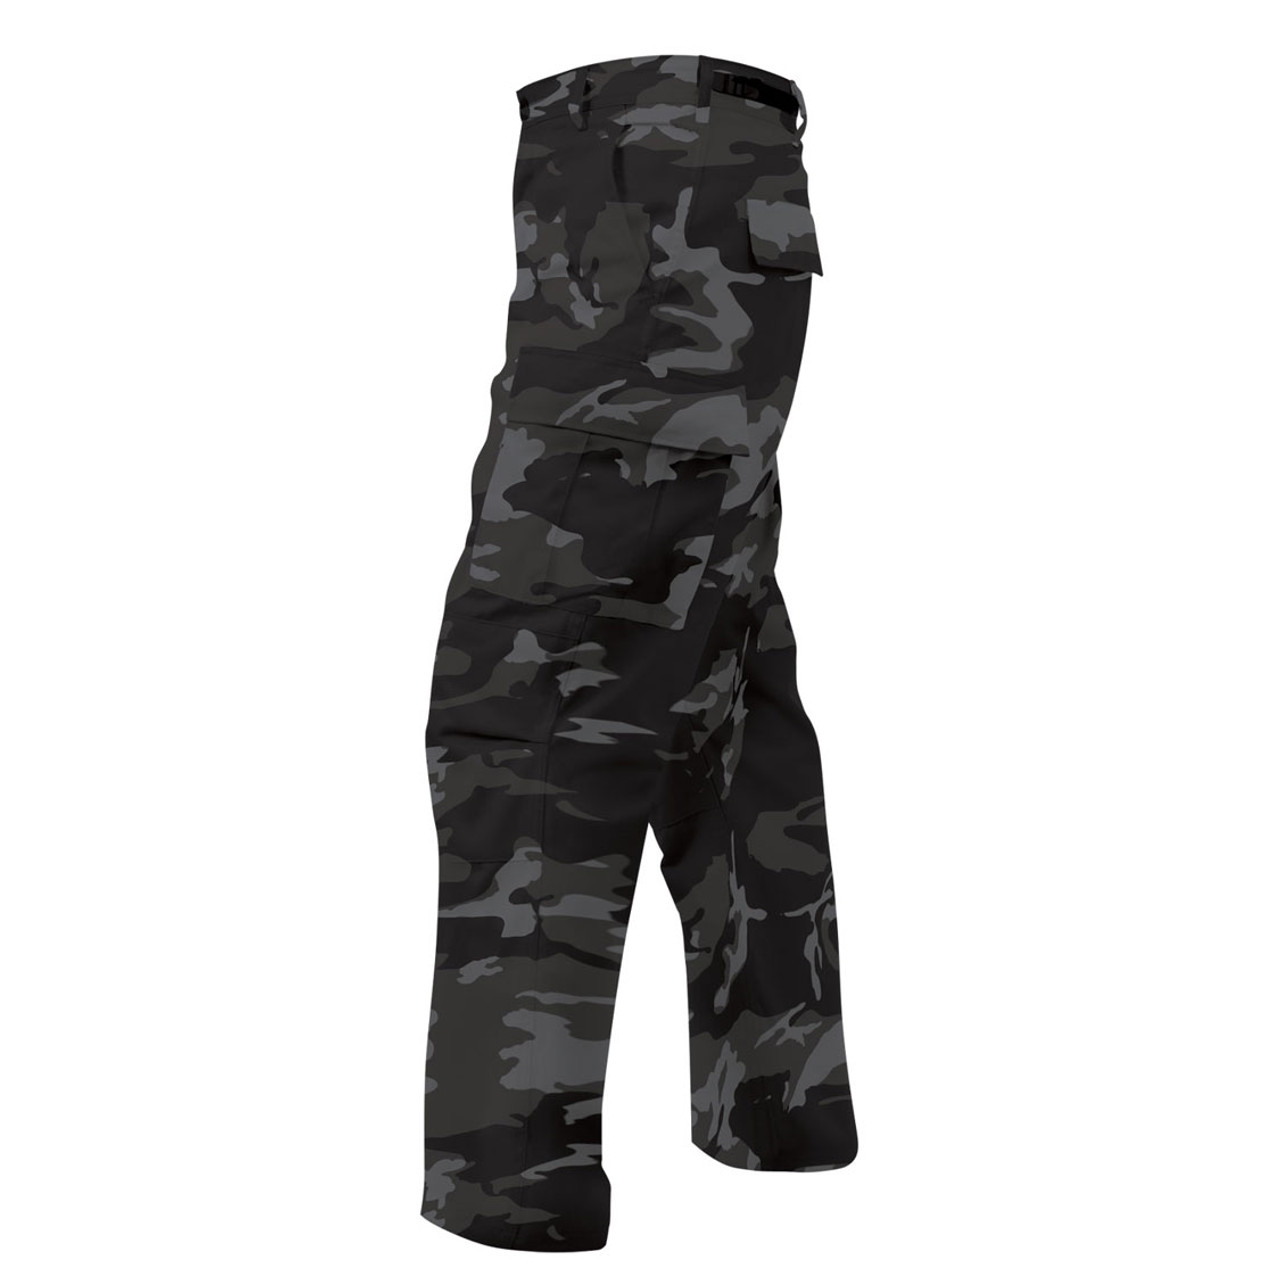 Shop Black Camo BDU's - Fatigues Army Navy Gear